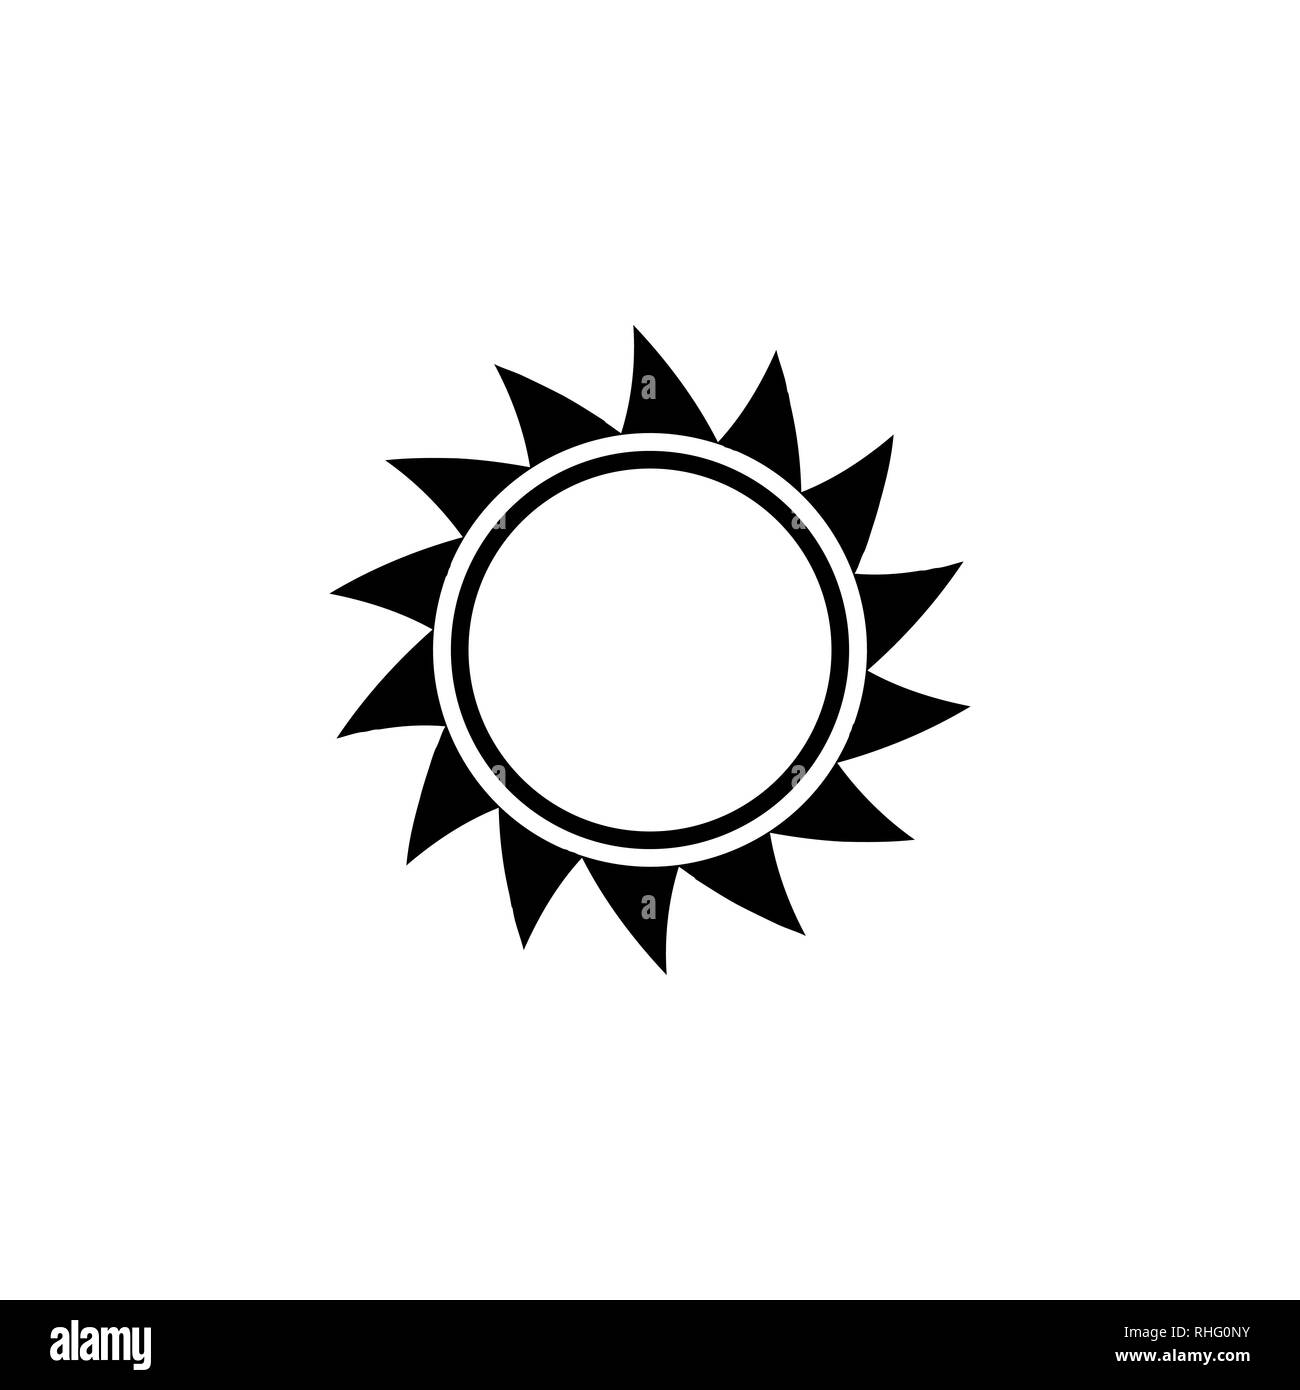 Sun vektor Symbol auf weißem Hintergrund. Stock Vektor